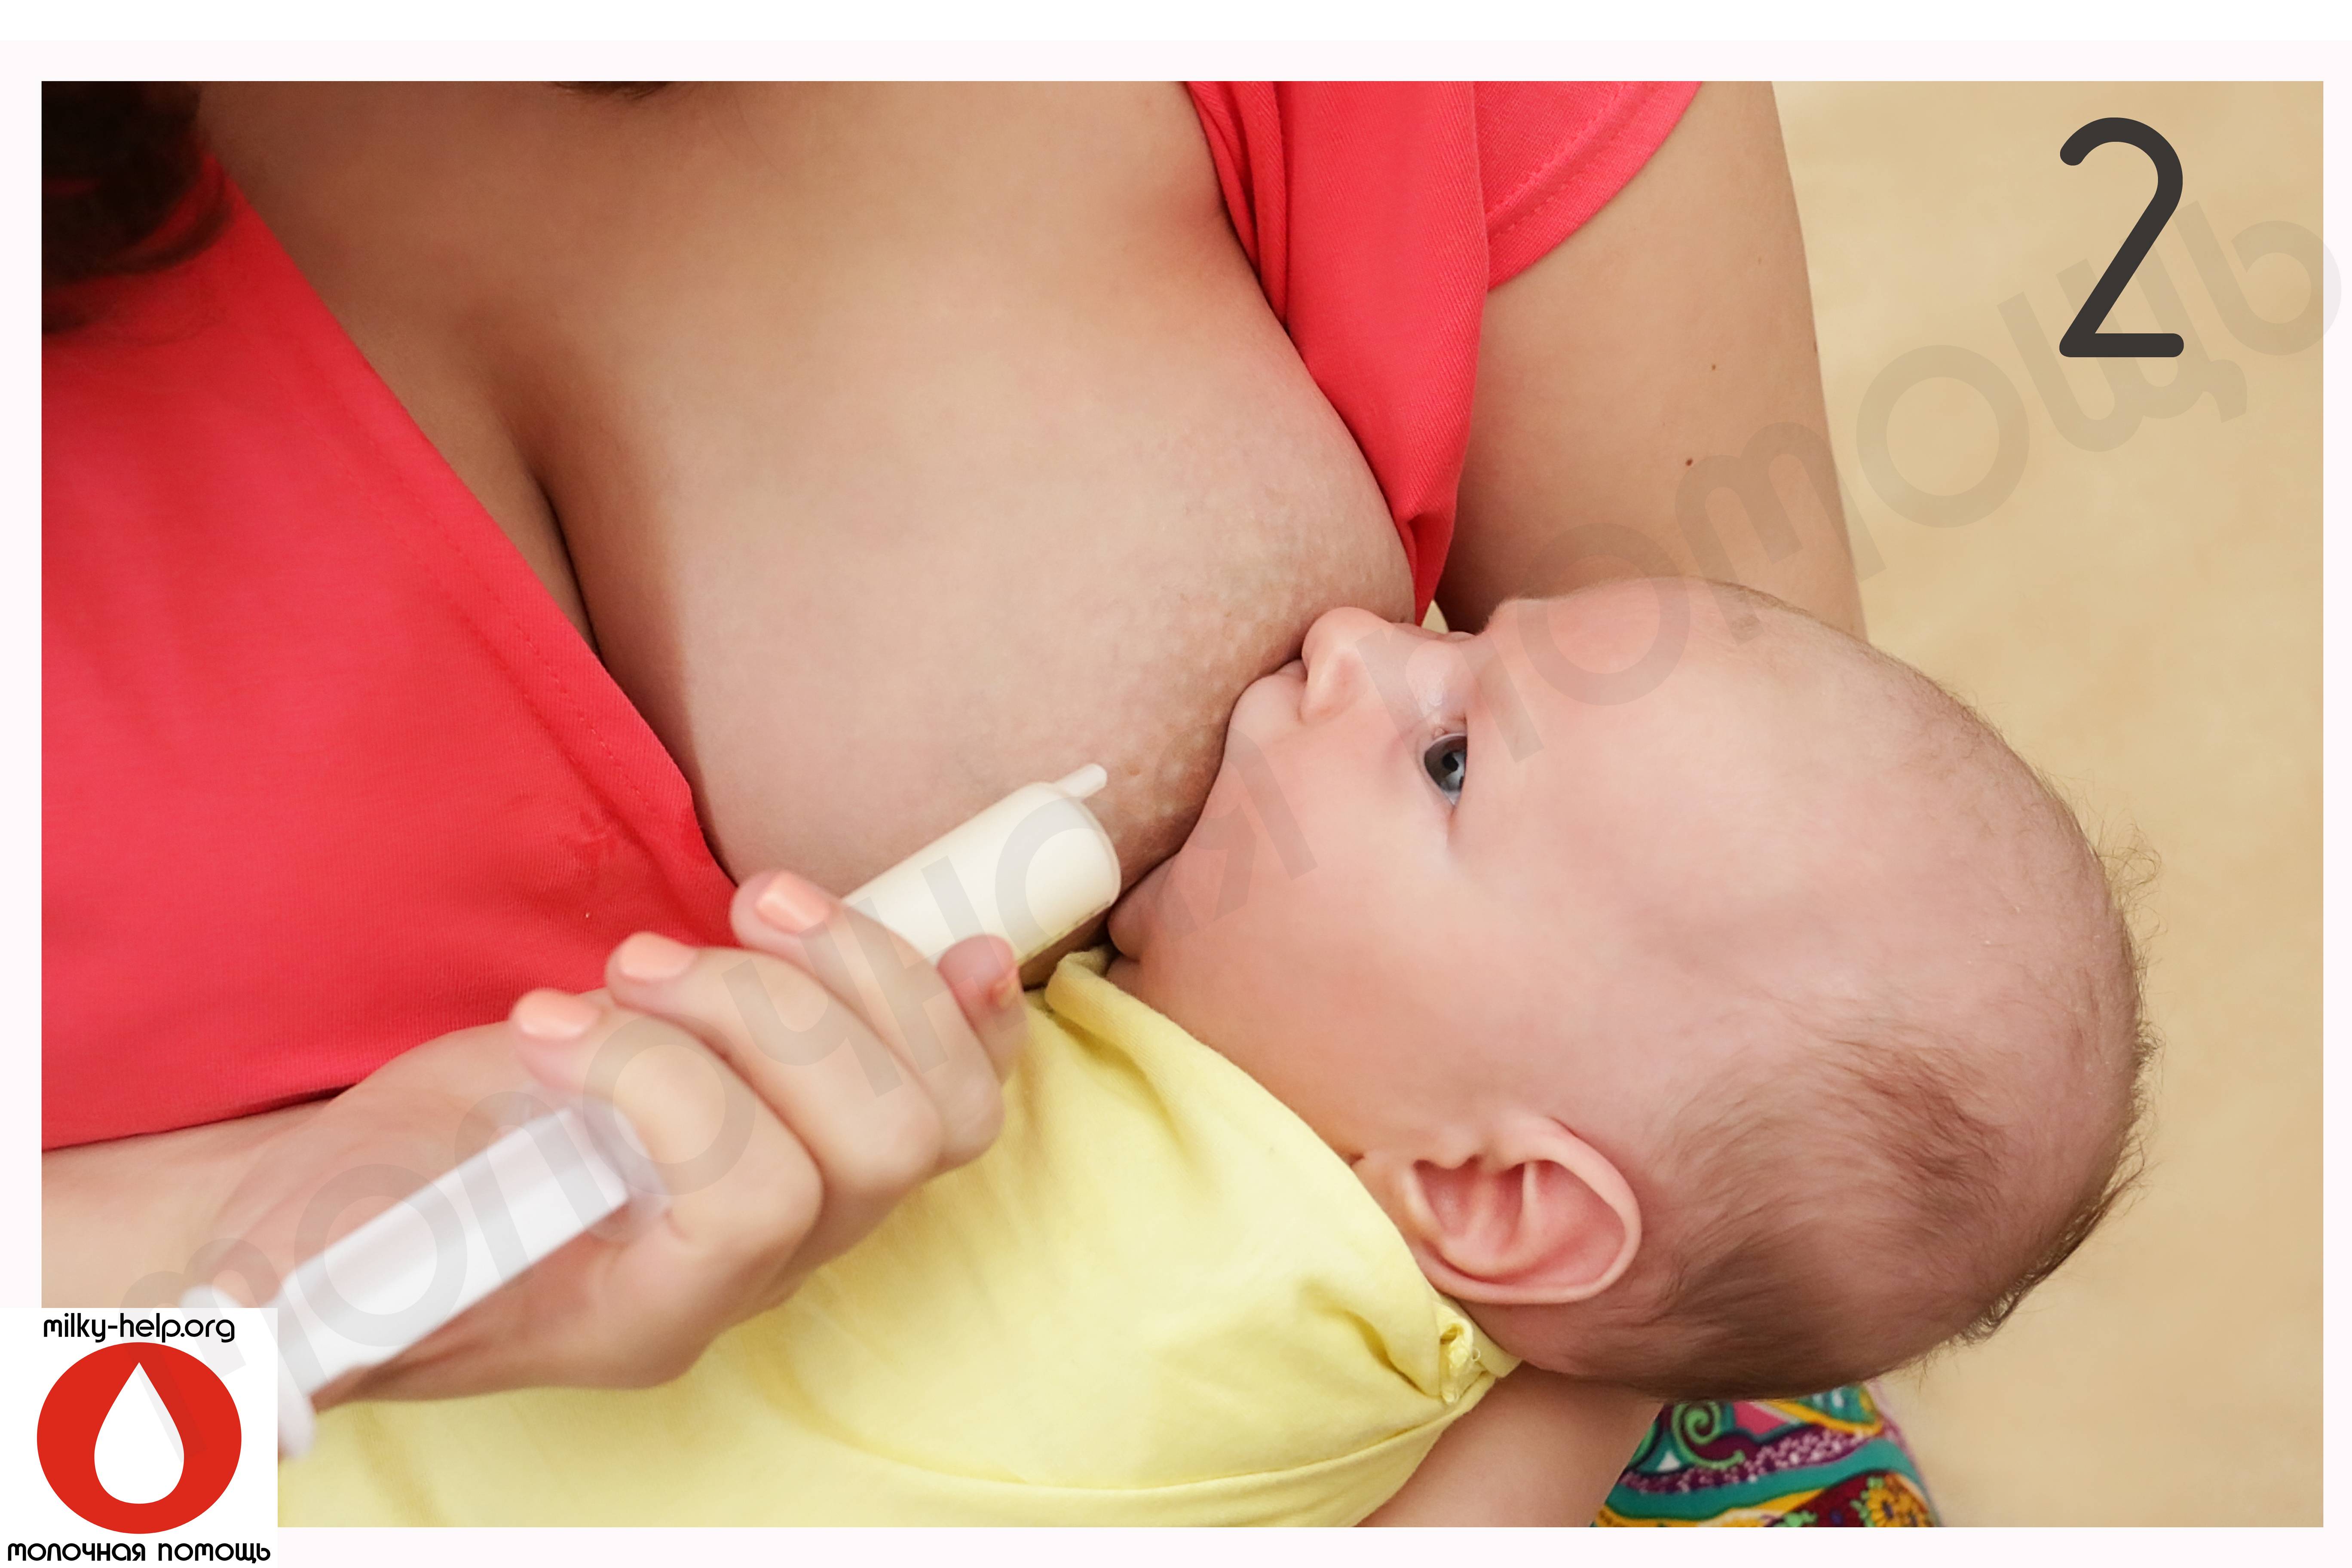 Укус соска. Система докорма SNS для грудничка. Система для докорма грудничков новорожденных. Система докорма для новорожденных Medela. Дополнительная система кормления SNS.